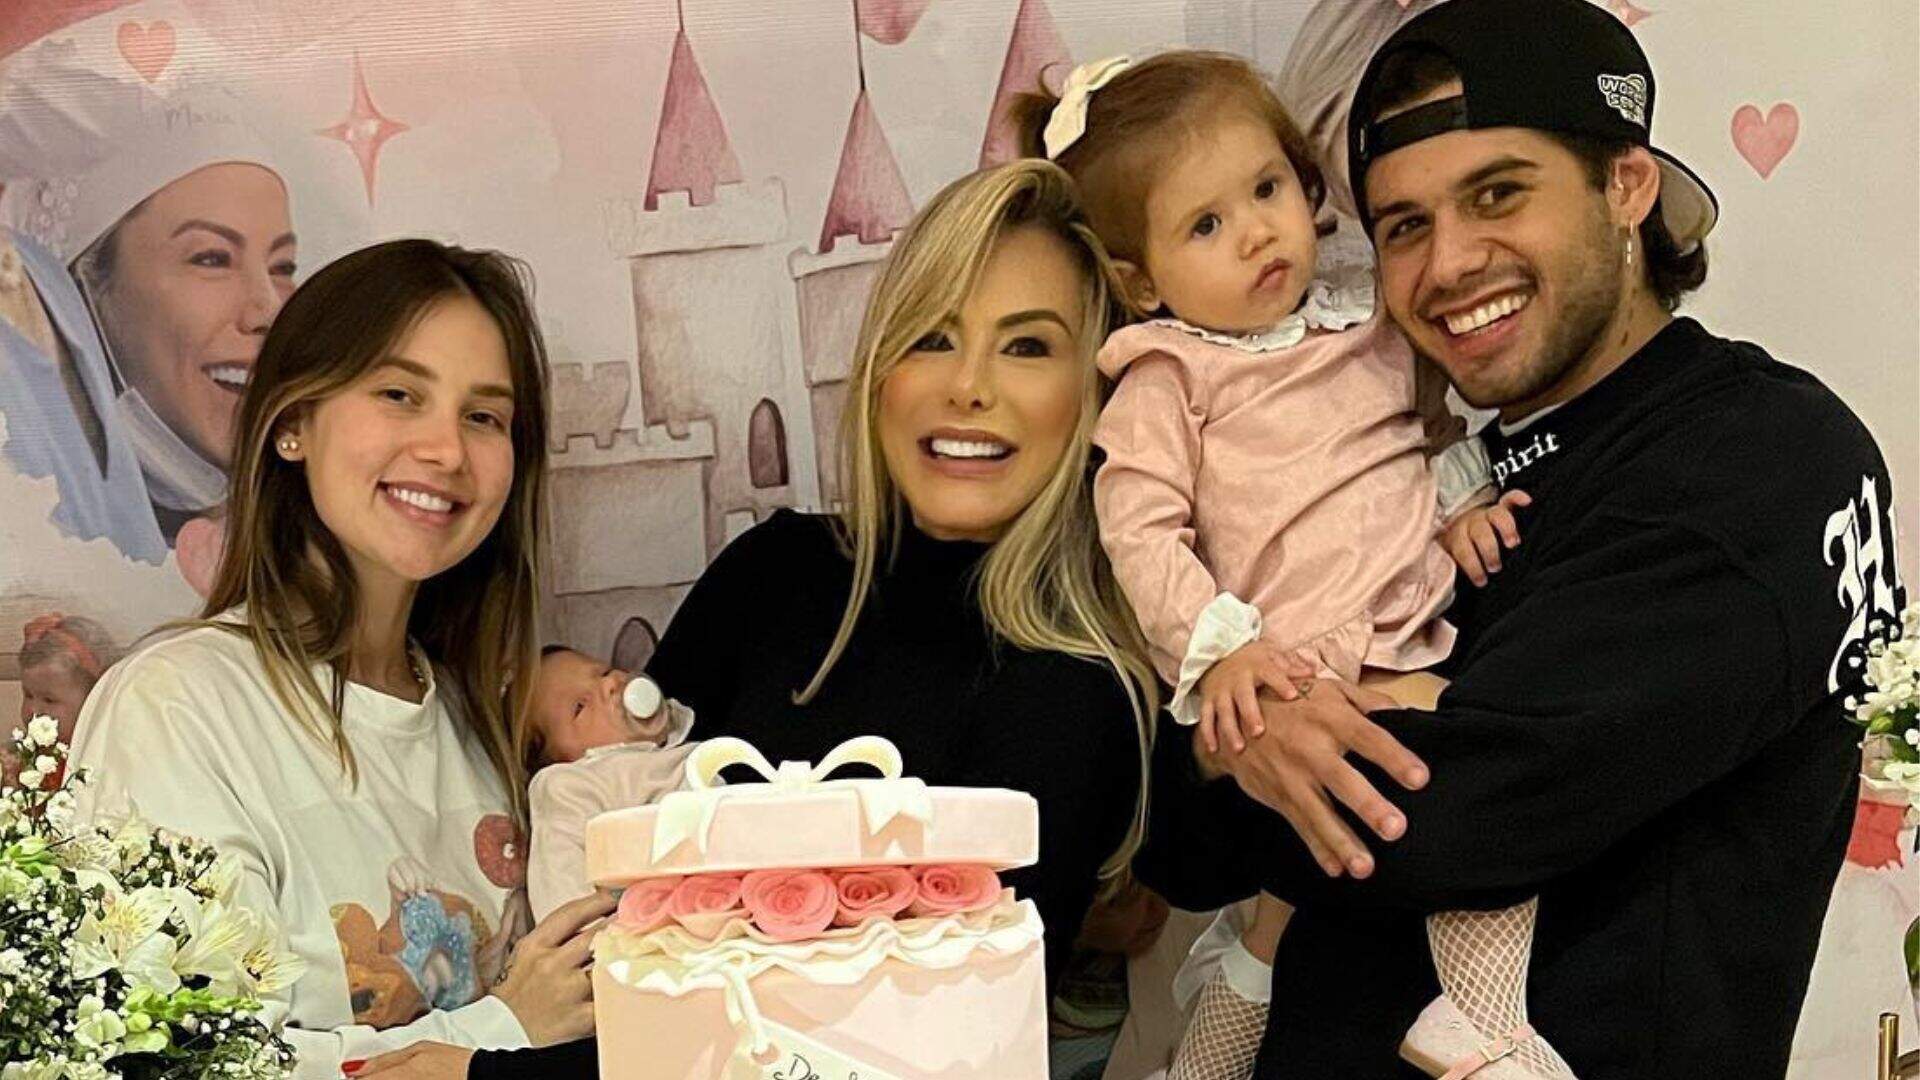 Virginia Fonseca, Zé Felipe e filhas fazem festa surpresa para Poliana Rocha, esposa de Leonardo - Metropolitana FM